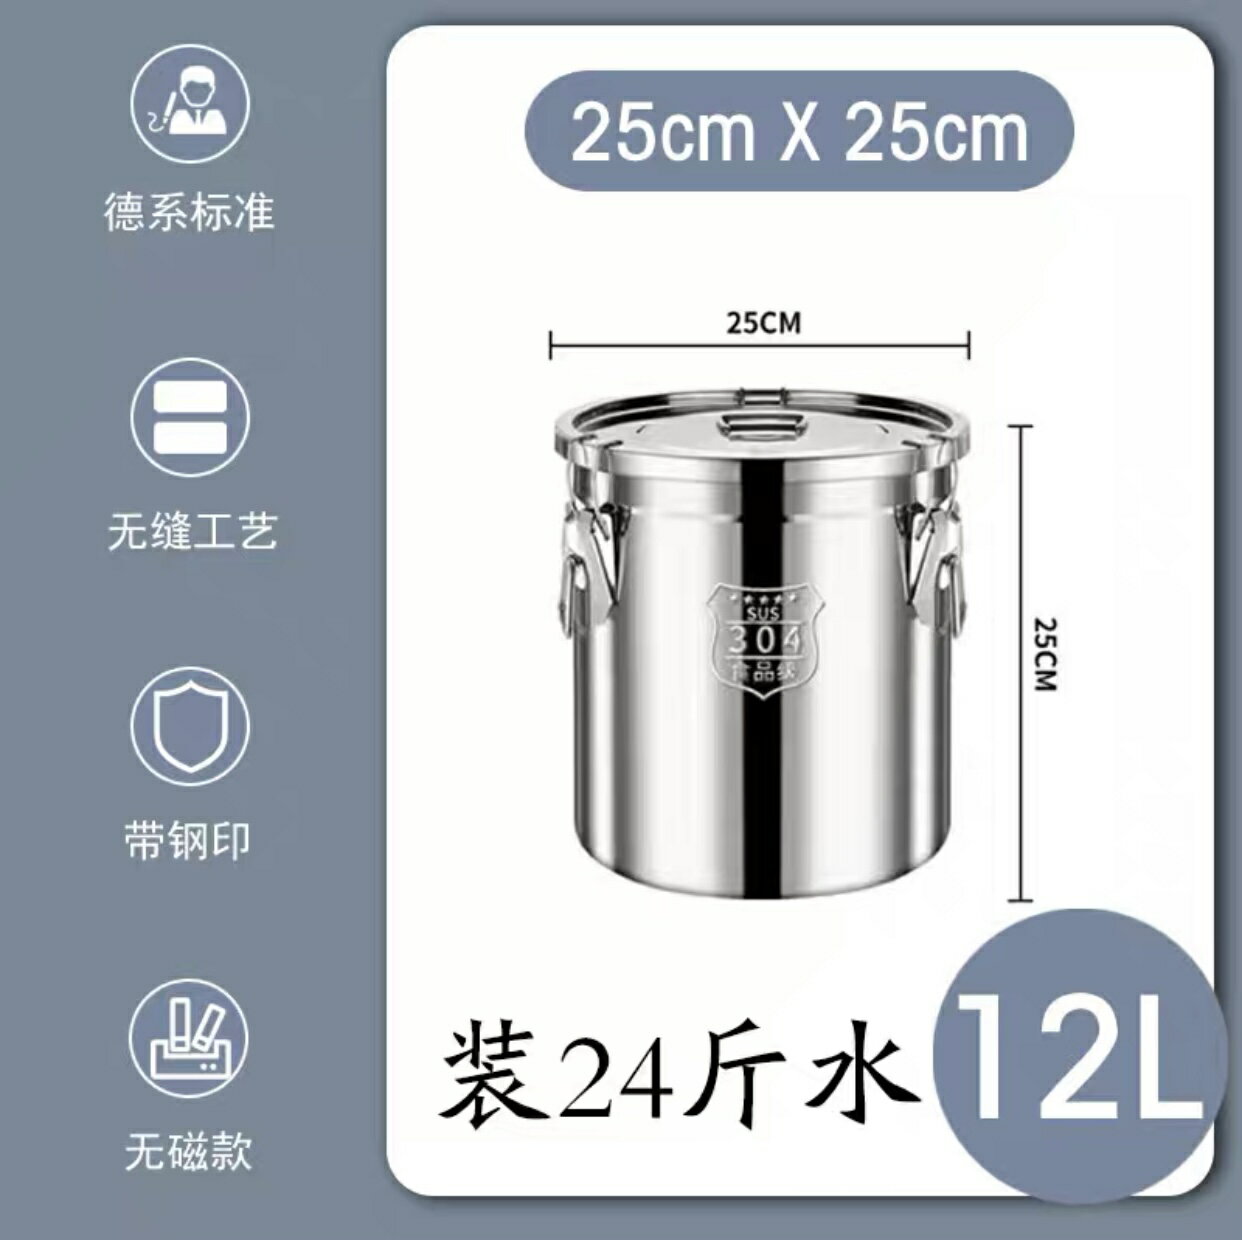 不鏽鋼米桶 麵粉罐 米缸 特厚304不鏽鋼密封桶米桶家用 50斤裝米桶防潮防蟲食用油桶裝酒缸『xy14742』